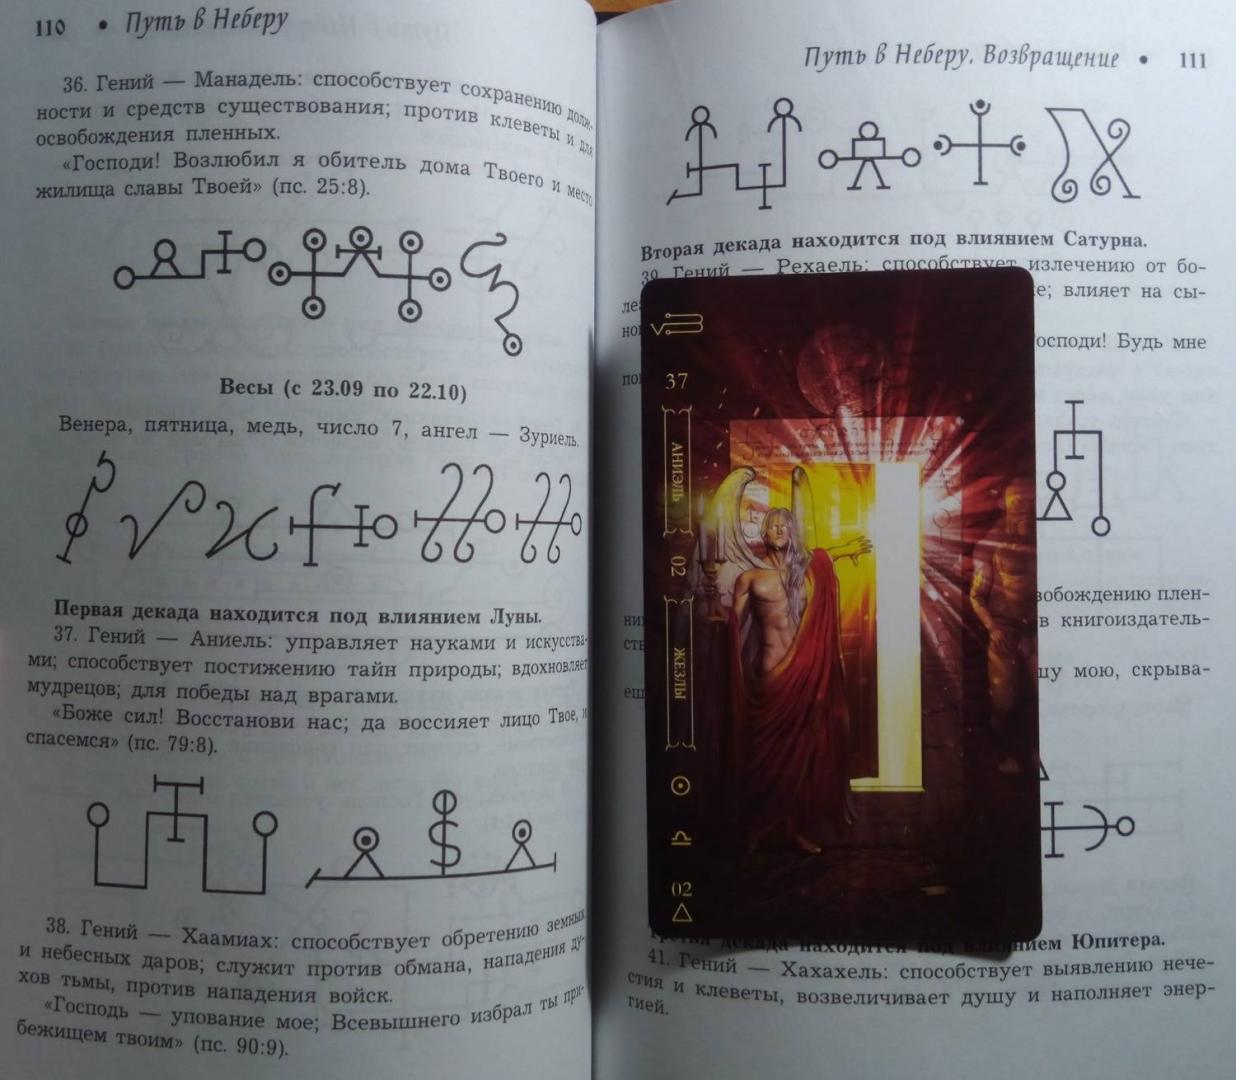 Иллюстрация 29 из 43 для Путь в Неберу: уникальные магические символы, ритуалы, печати - Заметин, Xedesa, Уразова | Лабиринт - книги. Источник: Eden